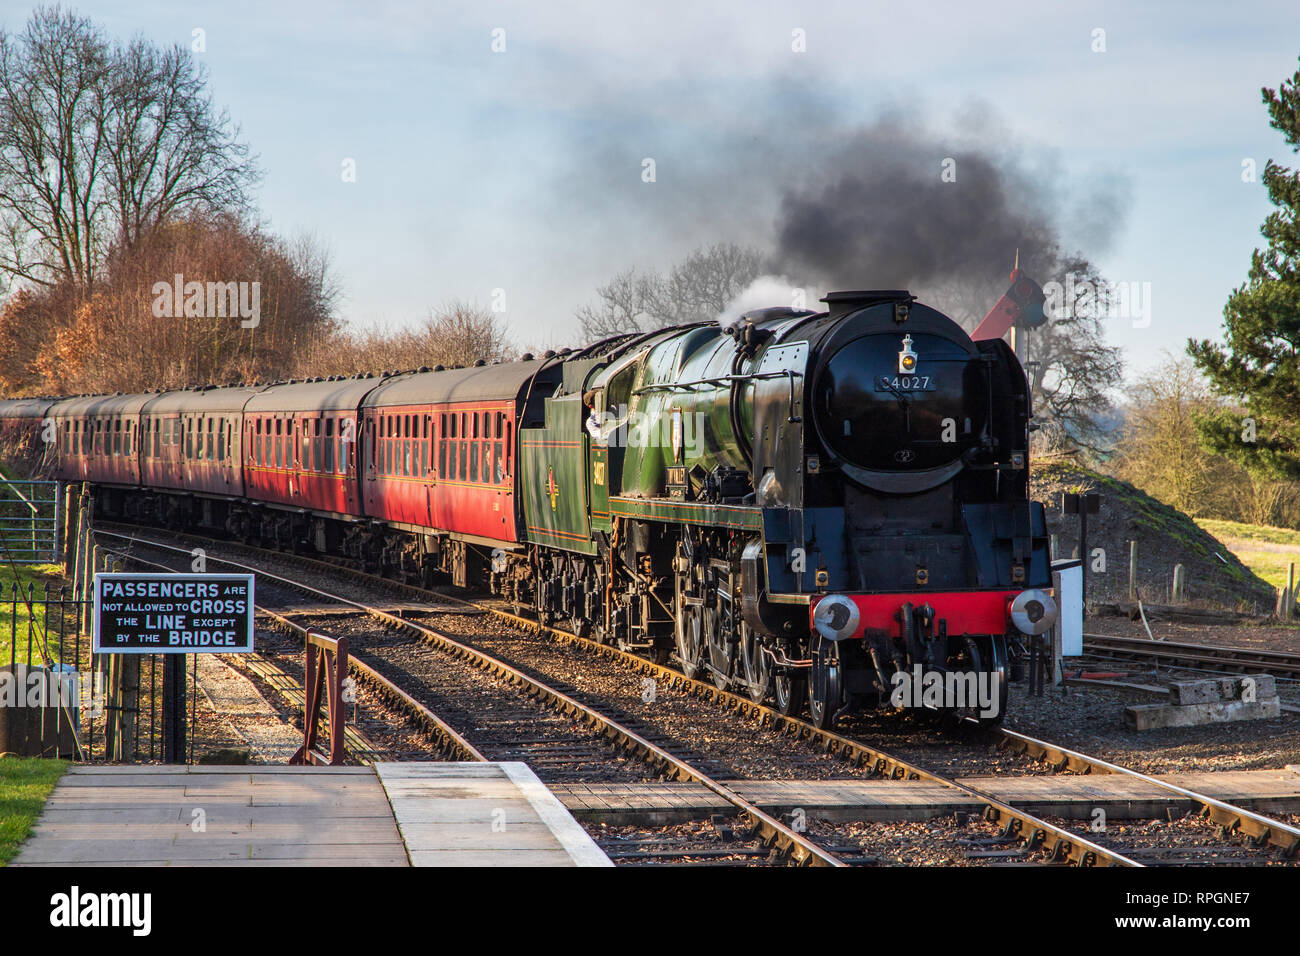 Des trains à vapeur sur la Severn Valley Railway dans le village pittoresque de Arley dans le Worcestershire, Royaume-Uni. Prise le 21 février 2019 Banque D'Images